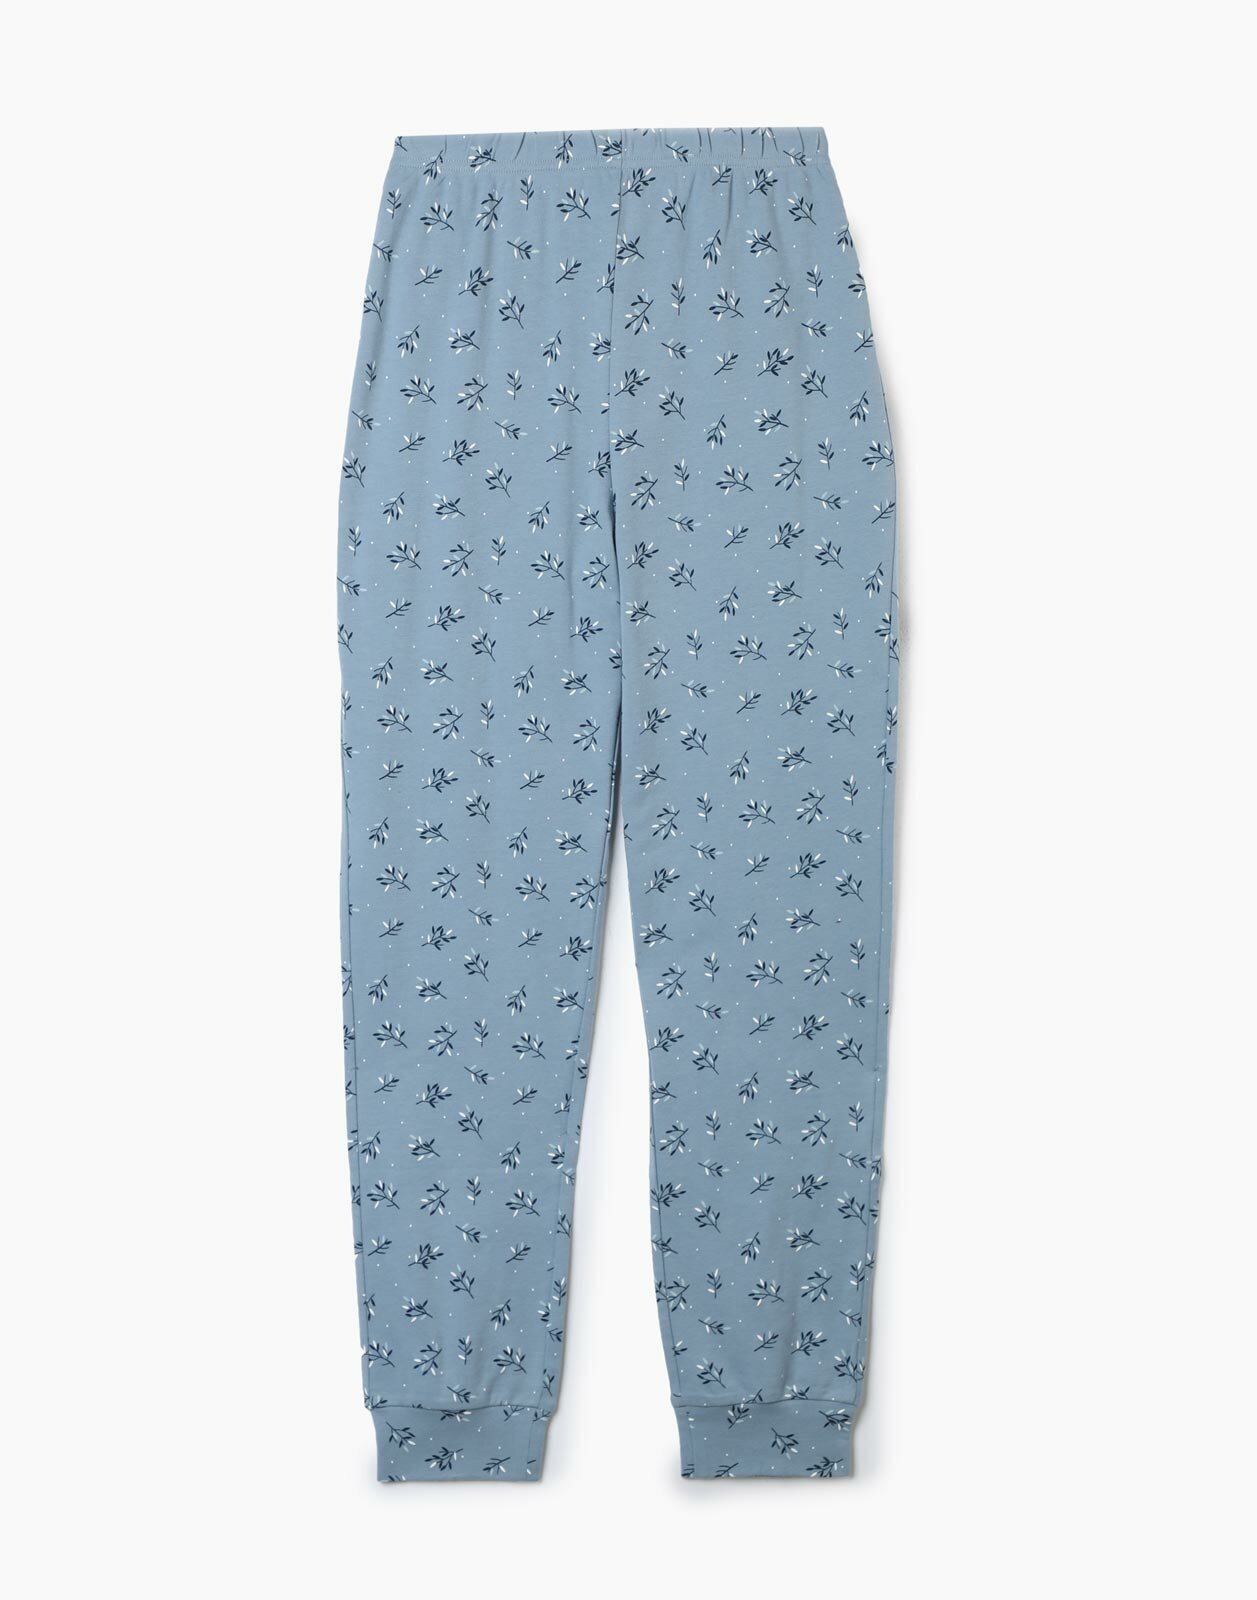 Синие пижамные брюки Jogger с цветочным принтом, S/164 (42)